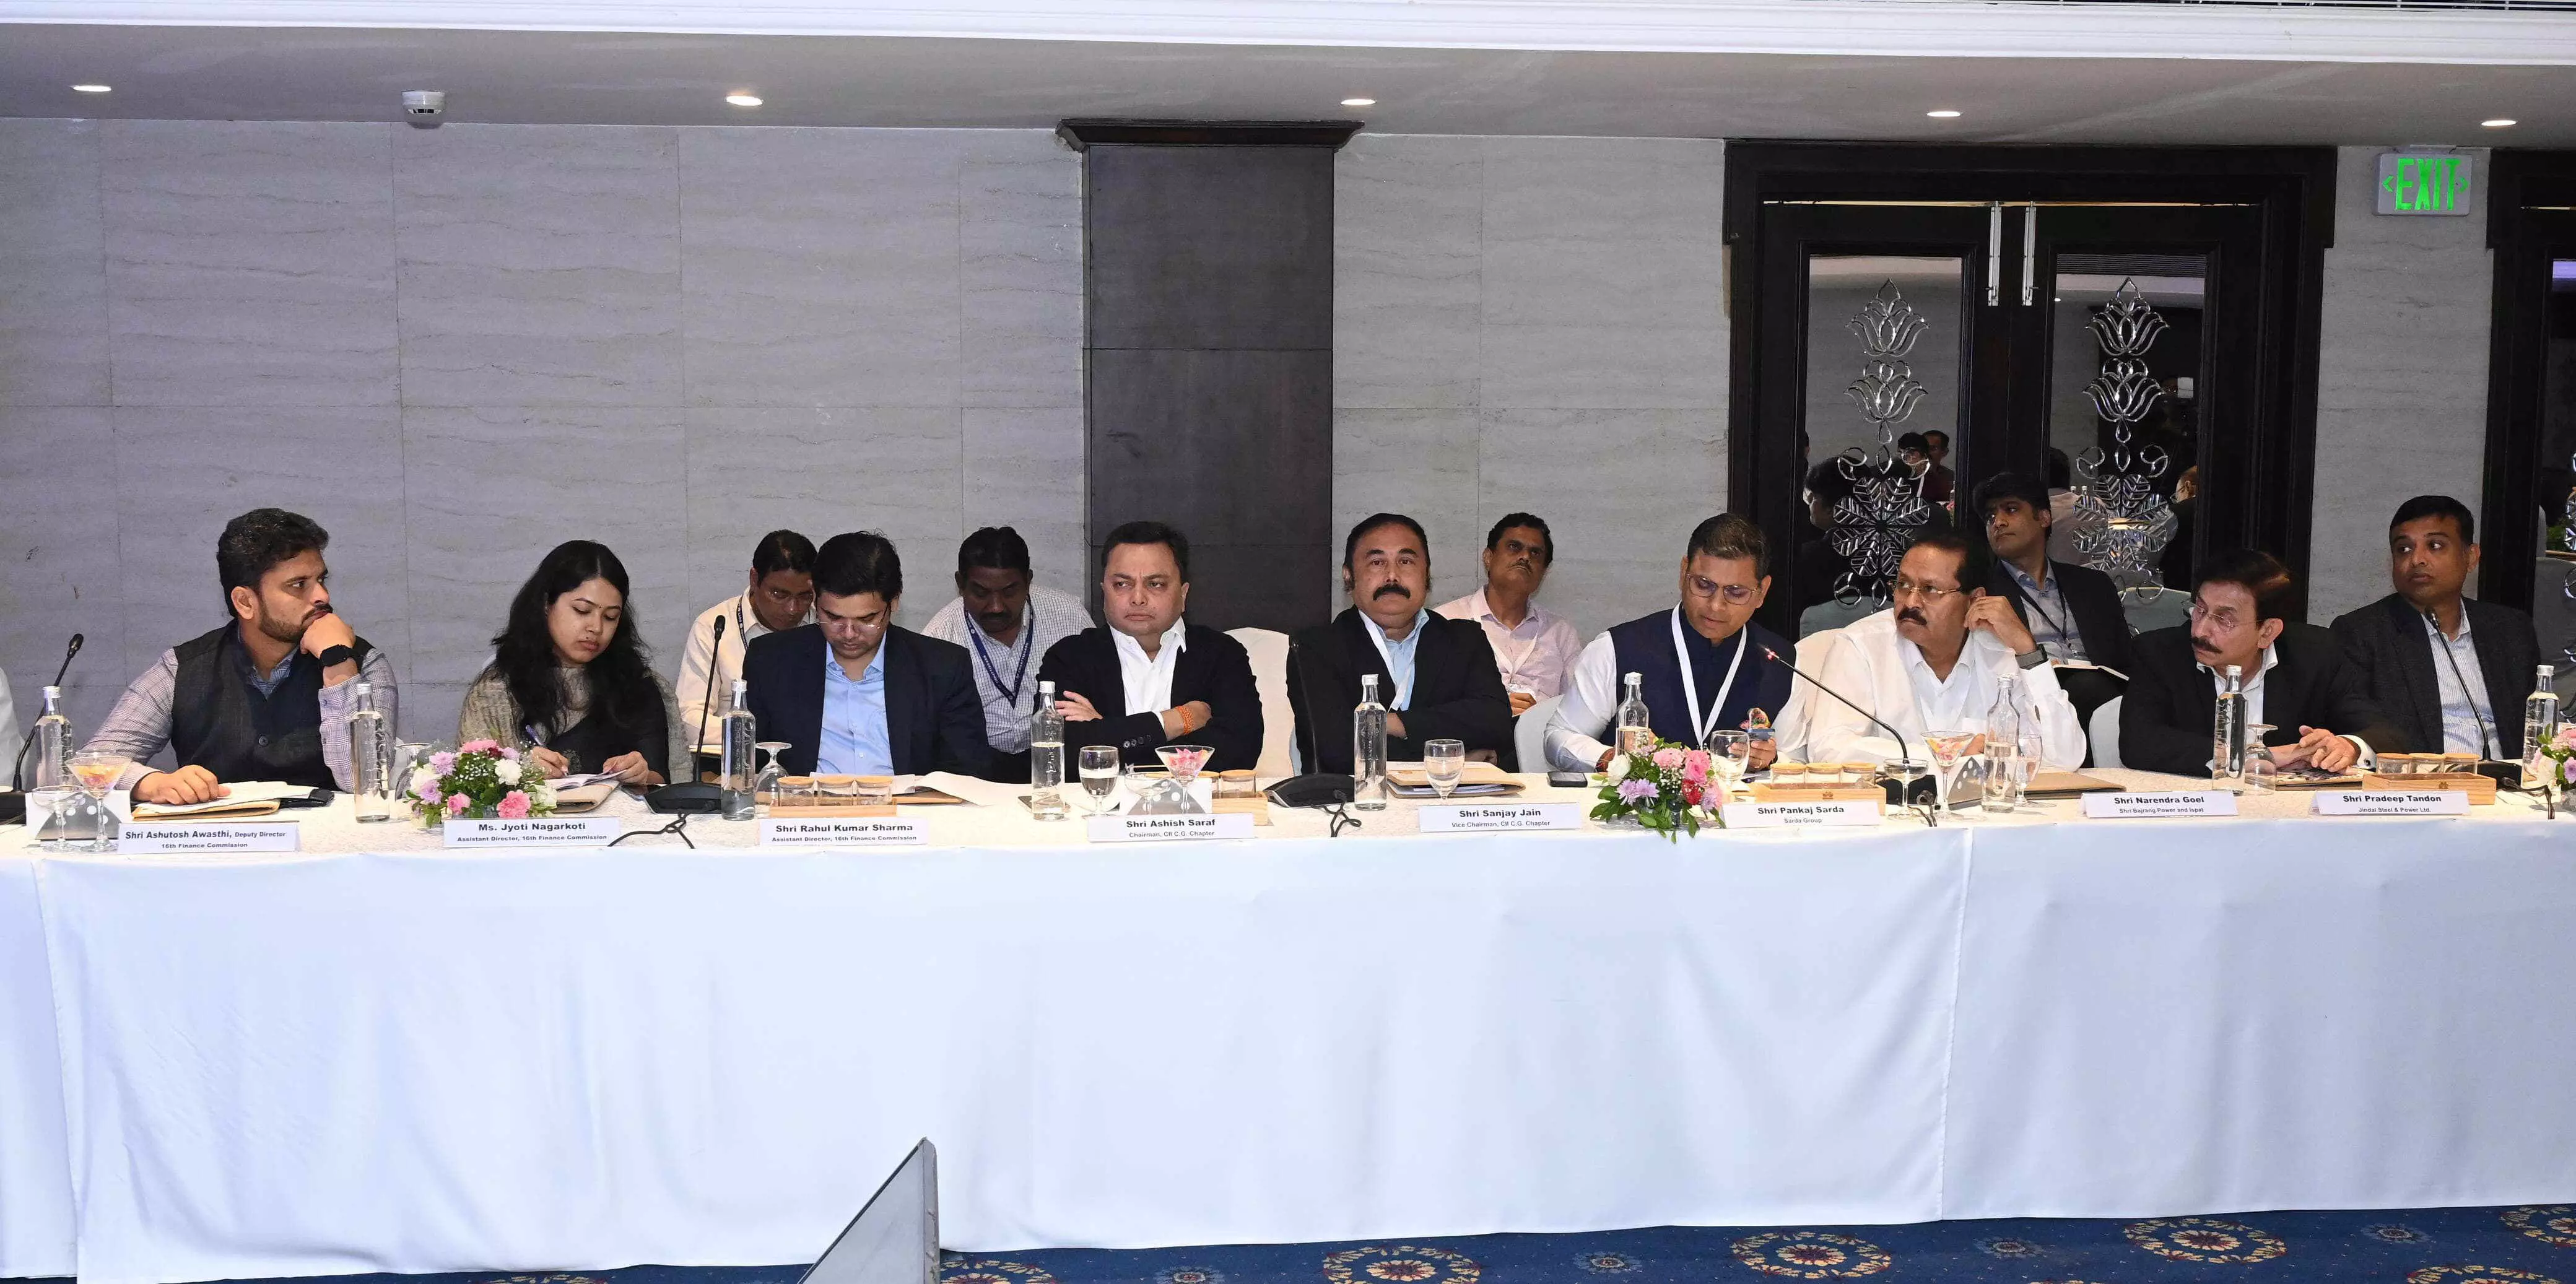 Raipur News: केंद्रीय वित्त आयोग के दल ने उद्योग और वाणिज्य संगठनों के प्रतिनिधियों के साथ की चर्चा